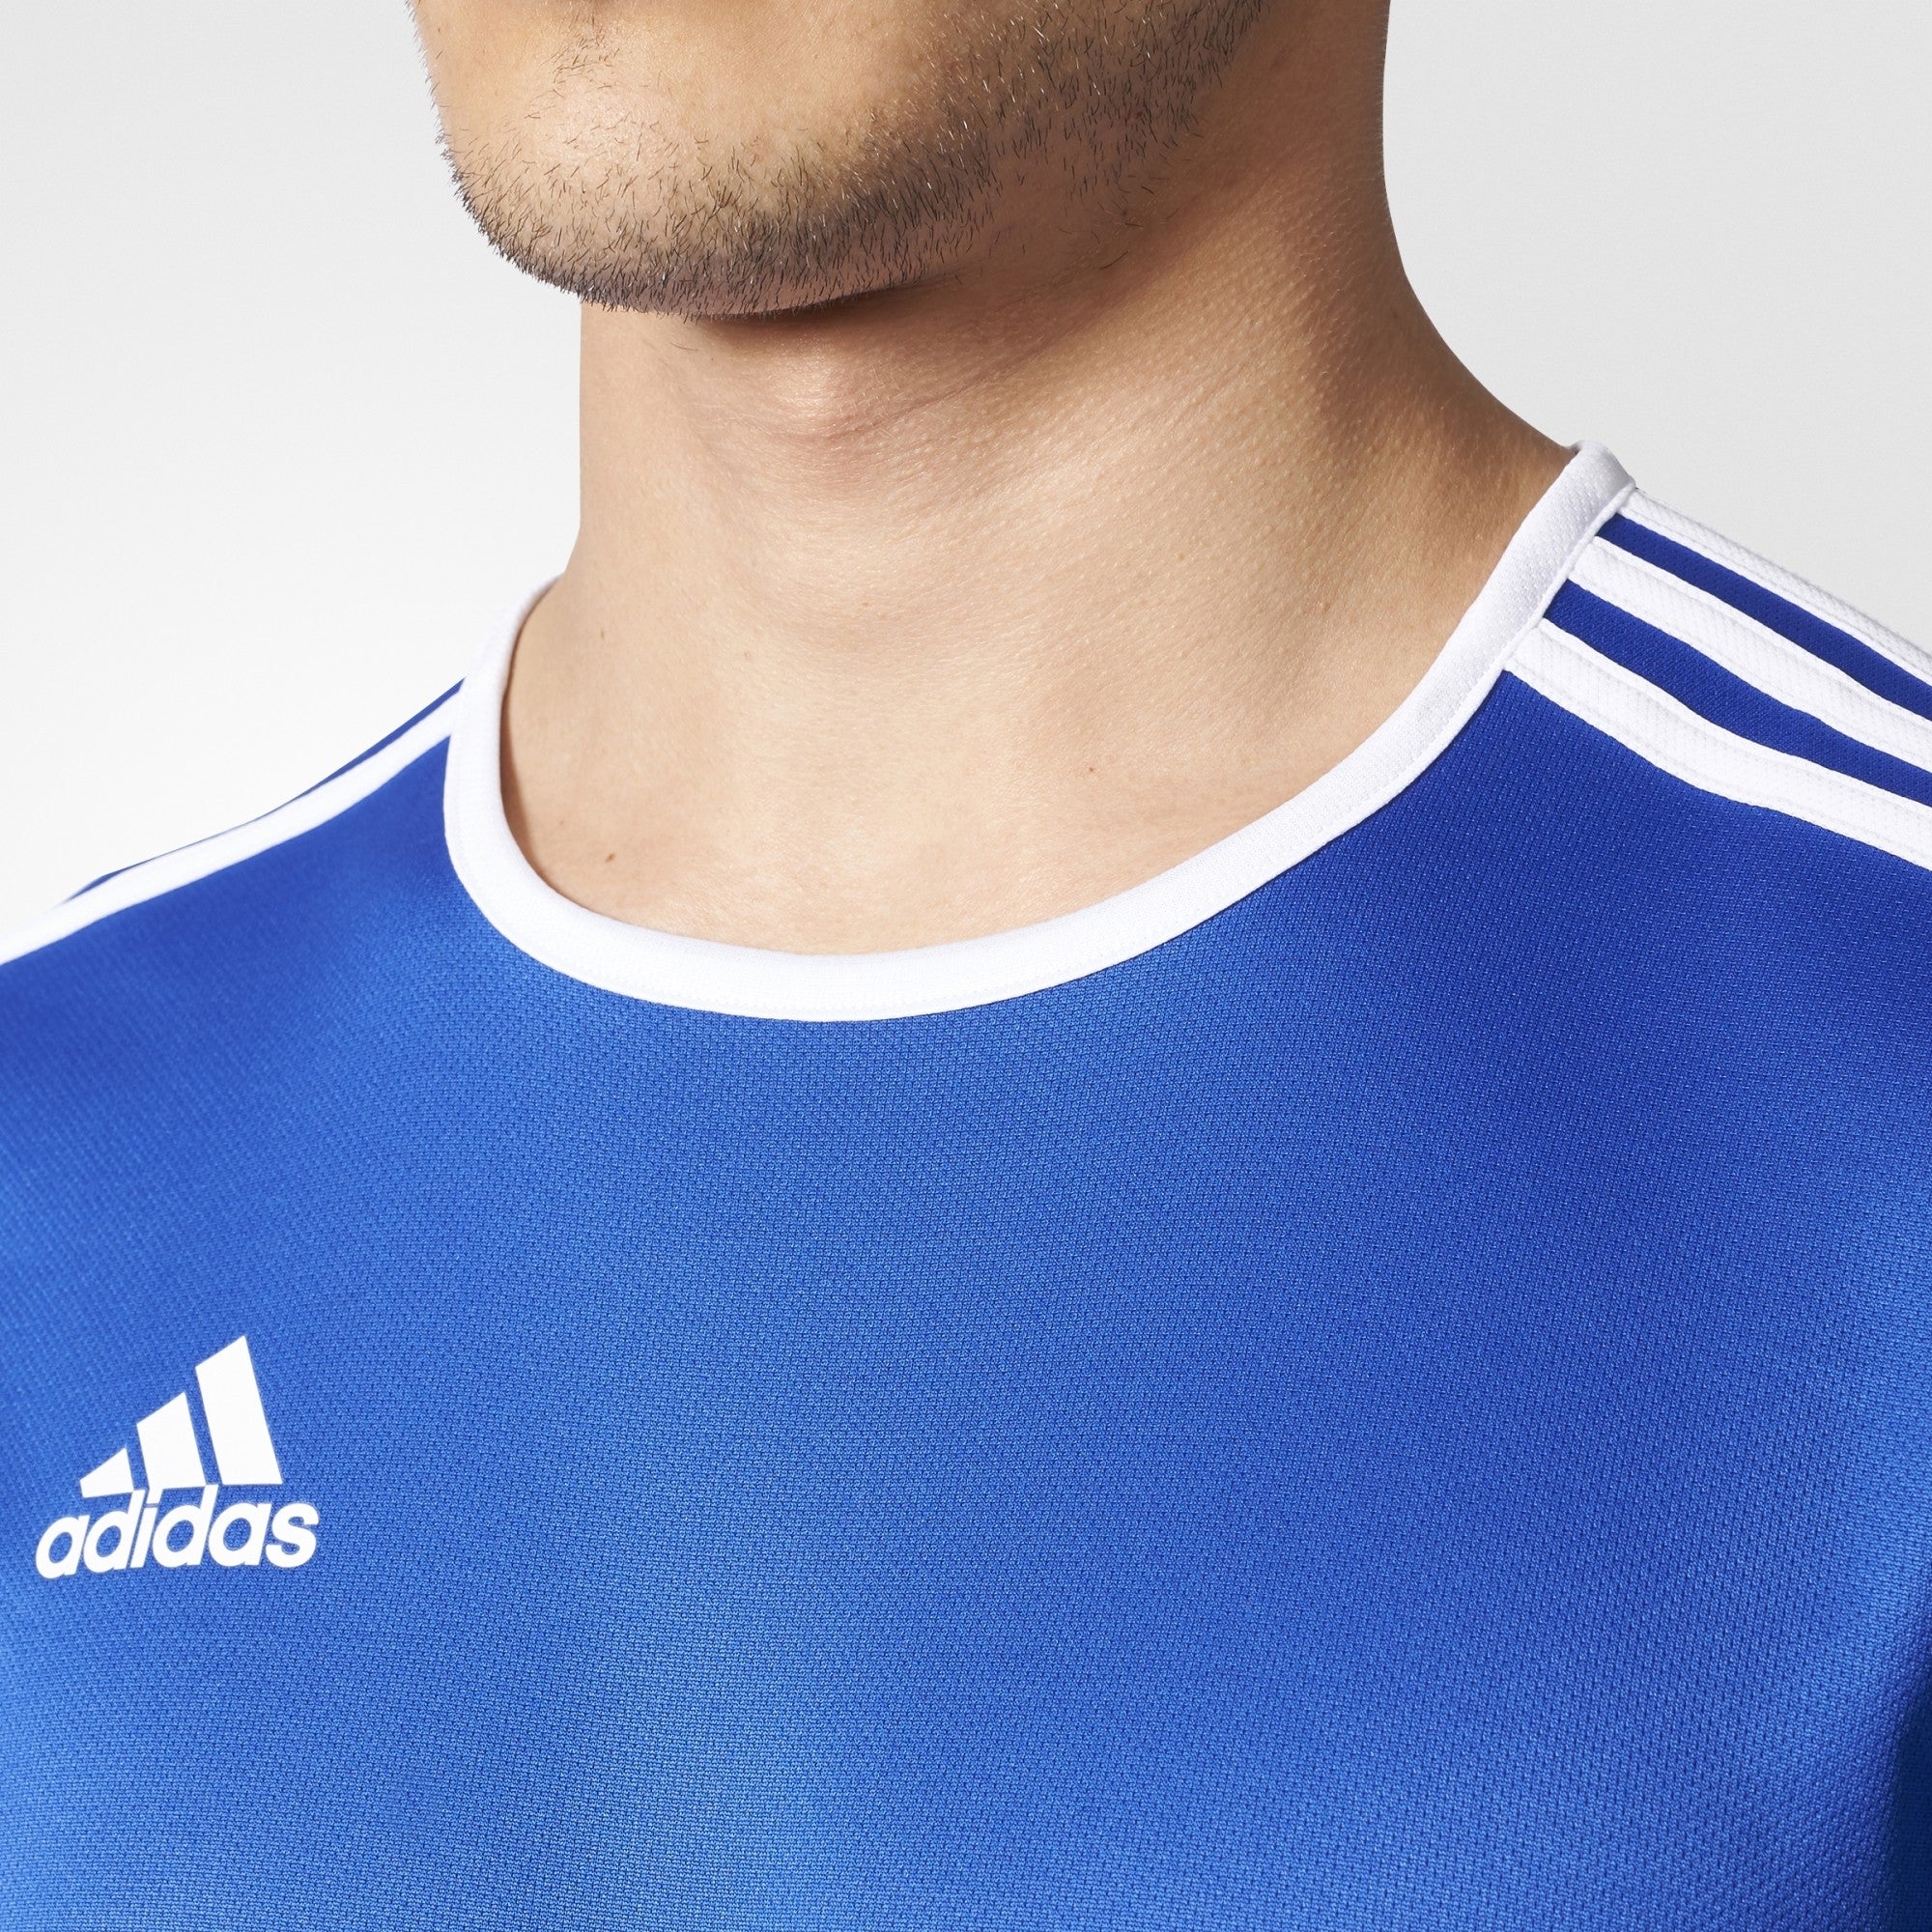 adidas ENTRADA 18 Soccer Jersey, Royal Blue, Men's